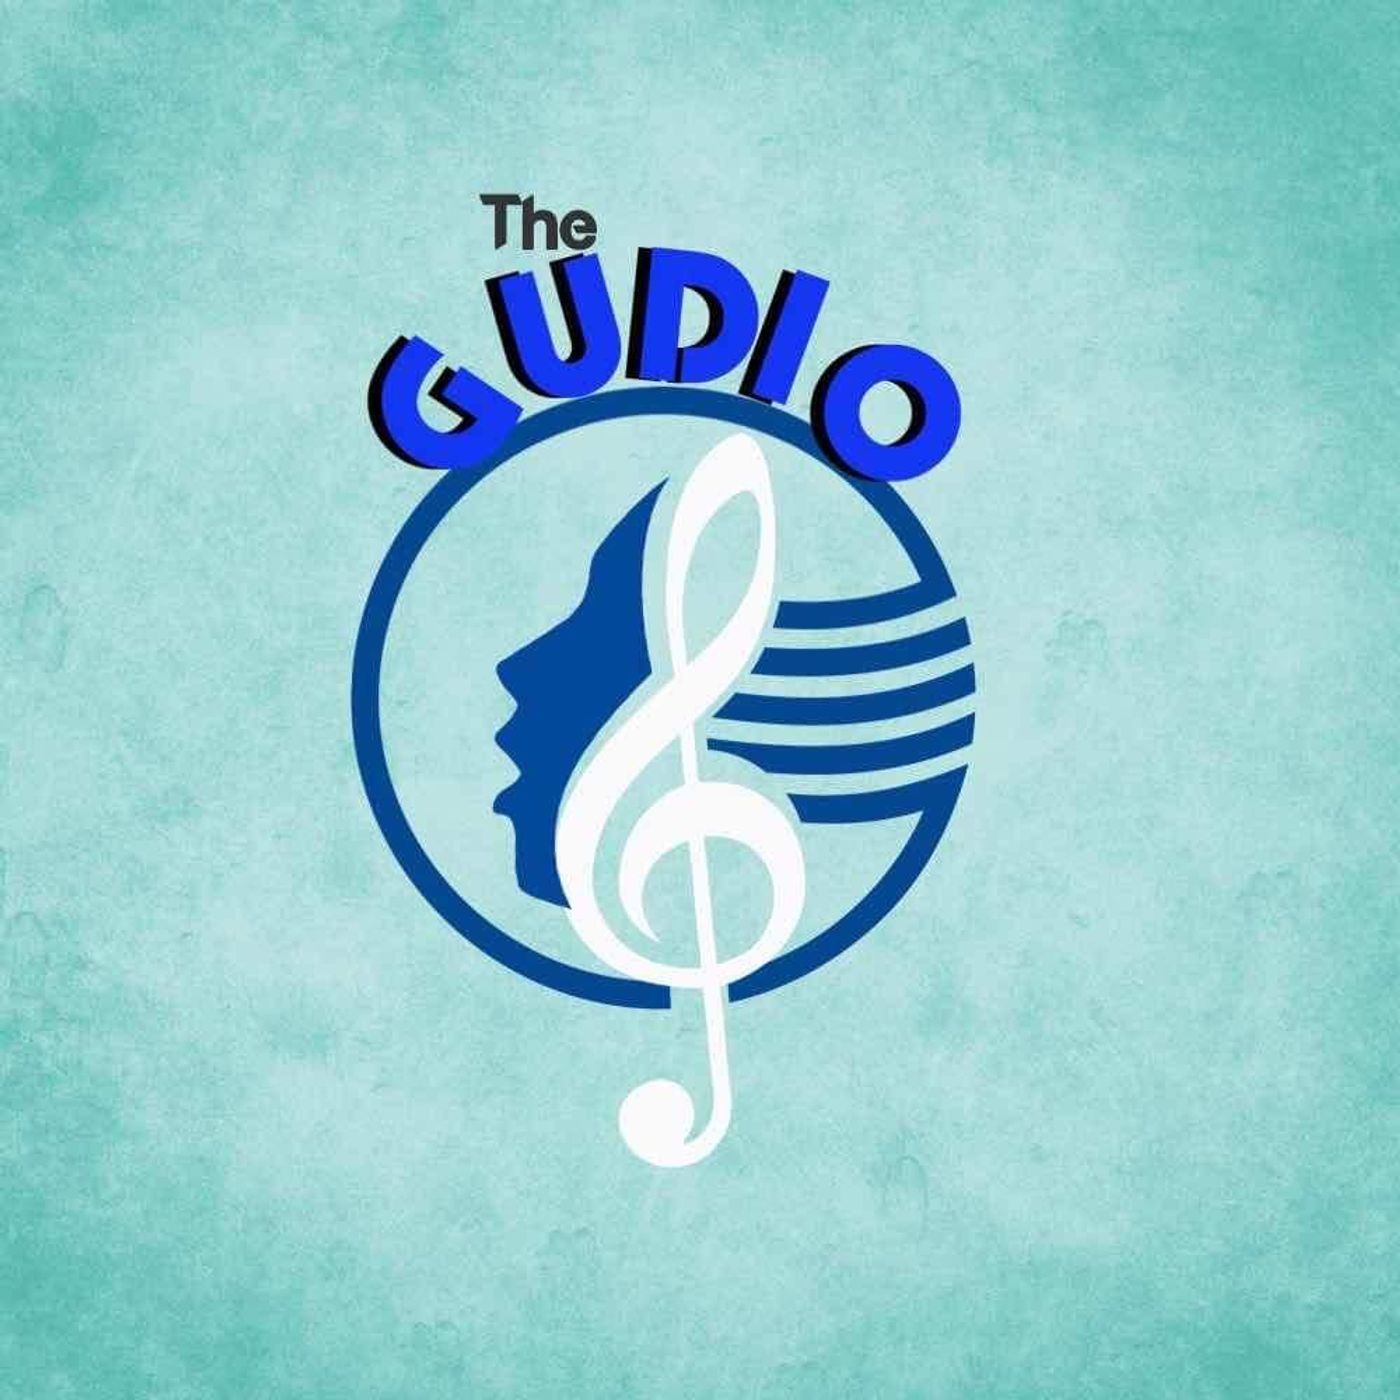 The Gudio 6/10/22